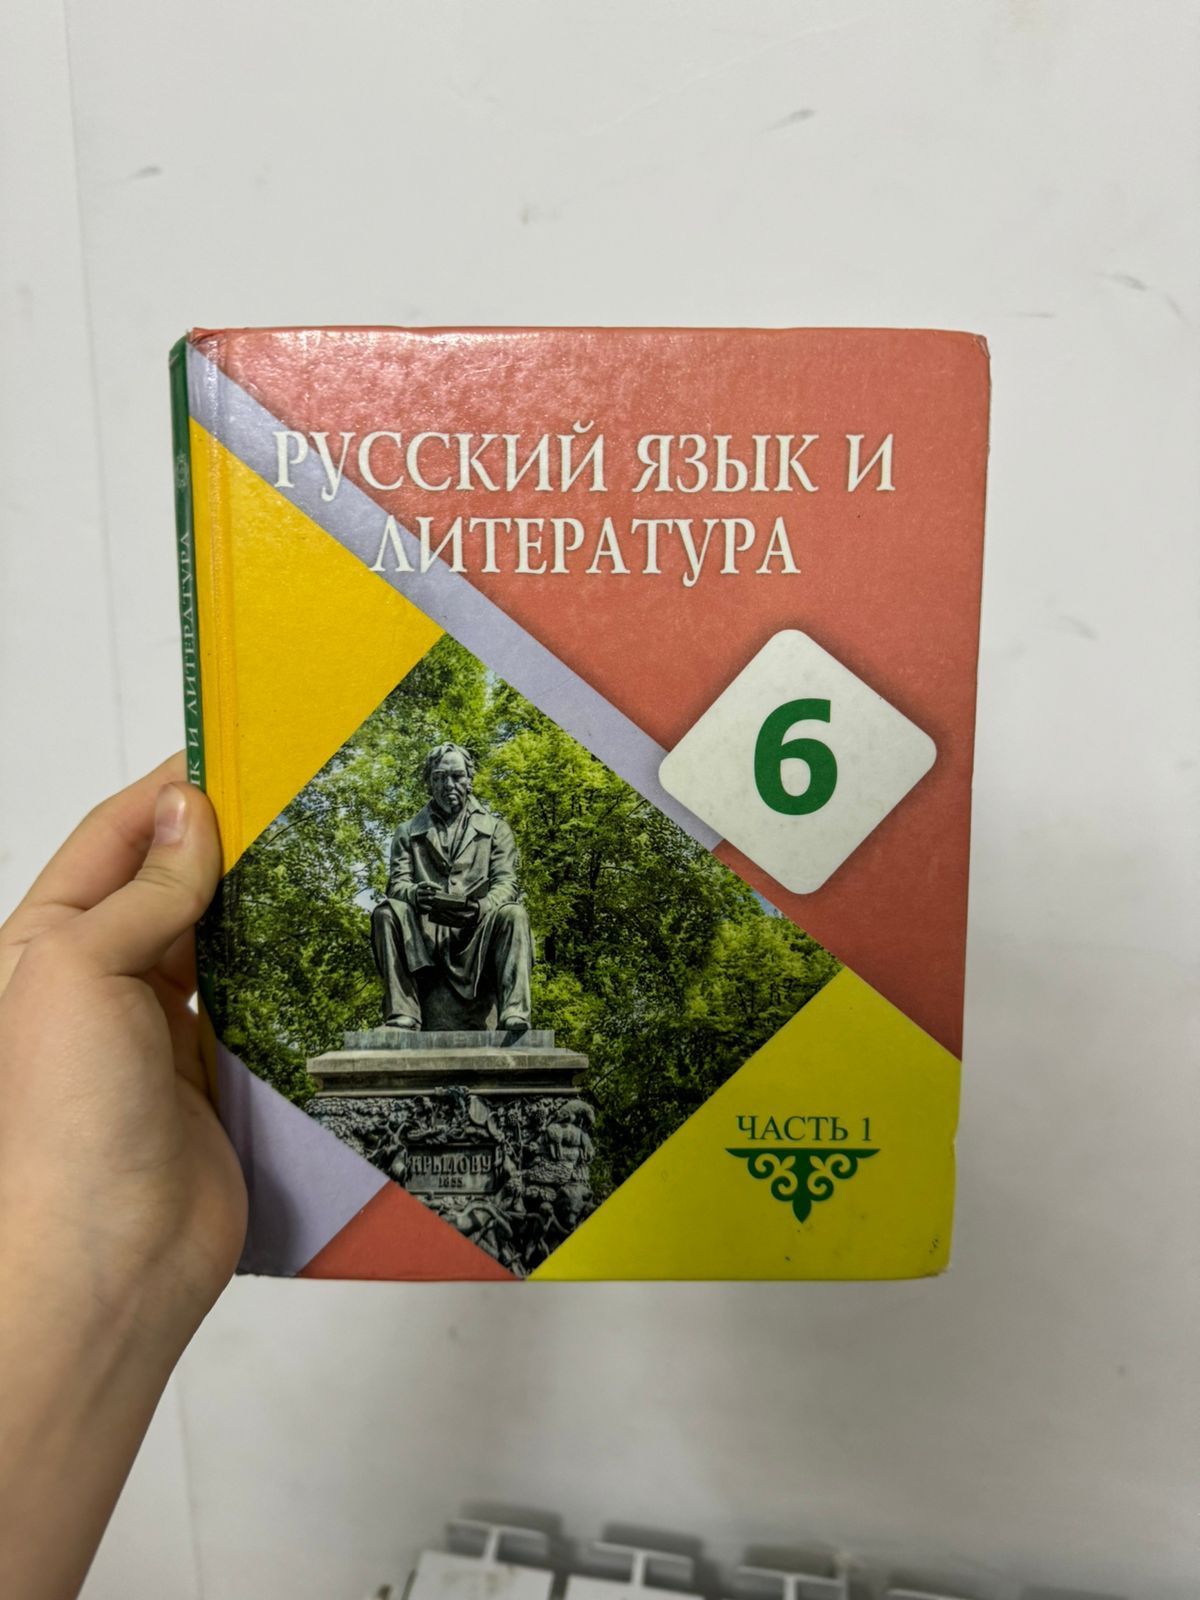 Книги 6 класса математика и русский язык